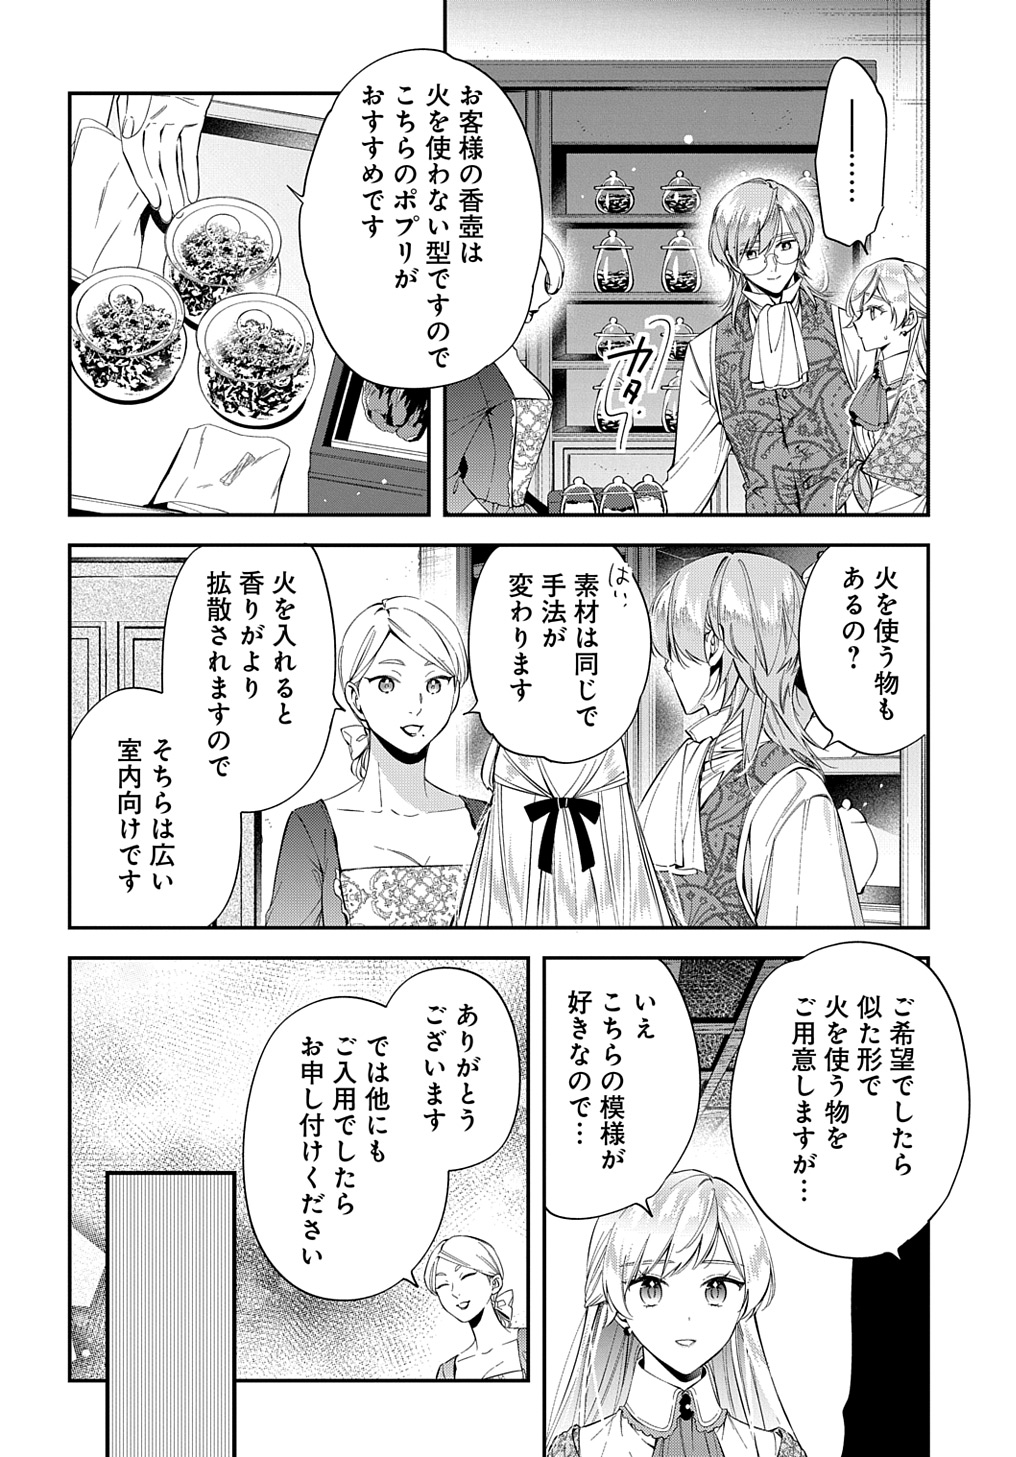 Outaishi ni Konyaku Hakisareta no de, Mou Baka no Furi wa Yameyou to Omoimasu - Chapter 24 - Page 14